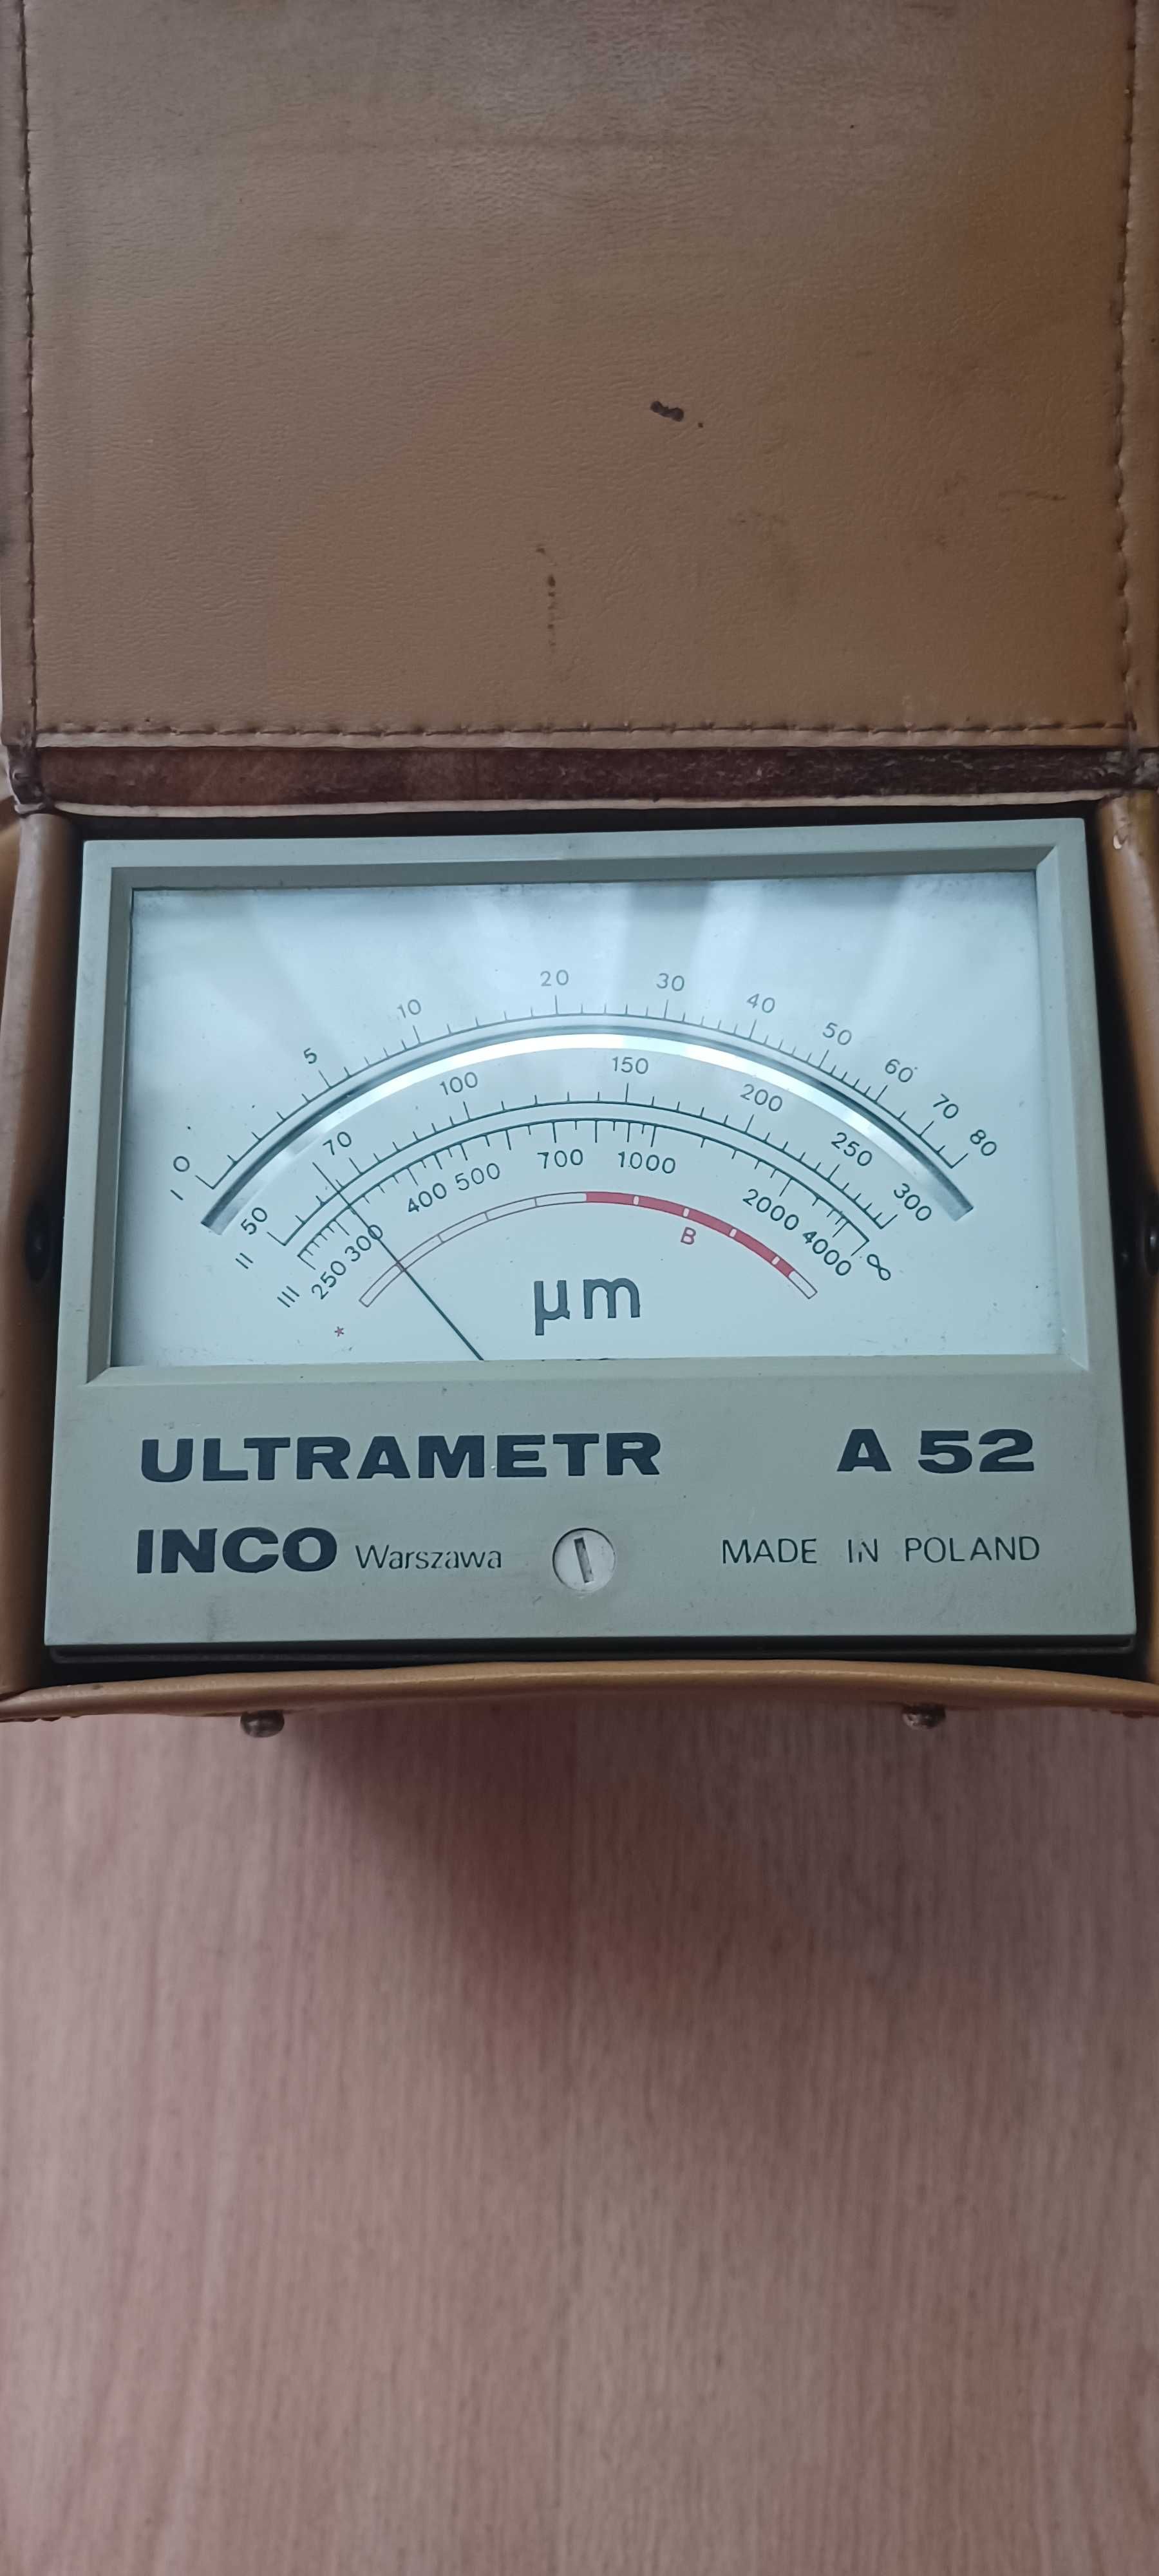 Ultrametr A52 INCO Warszawa - miernik